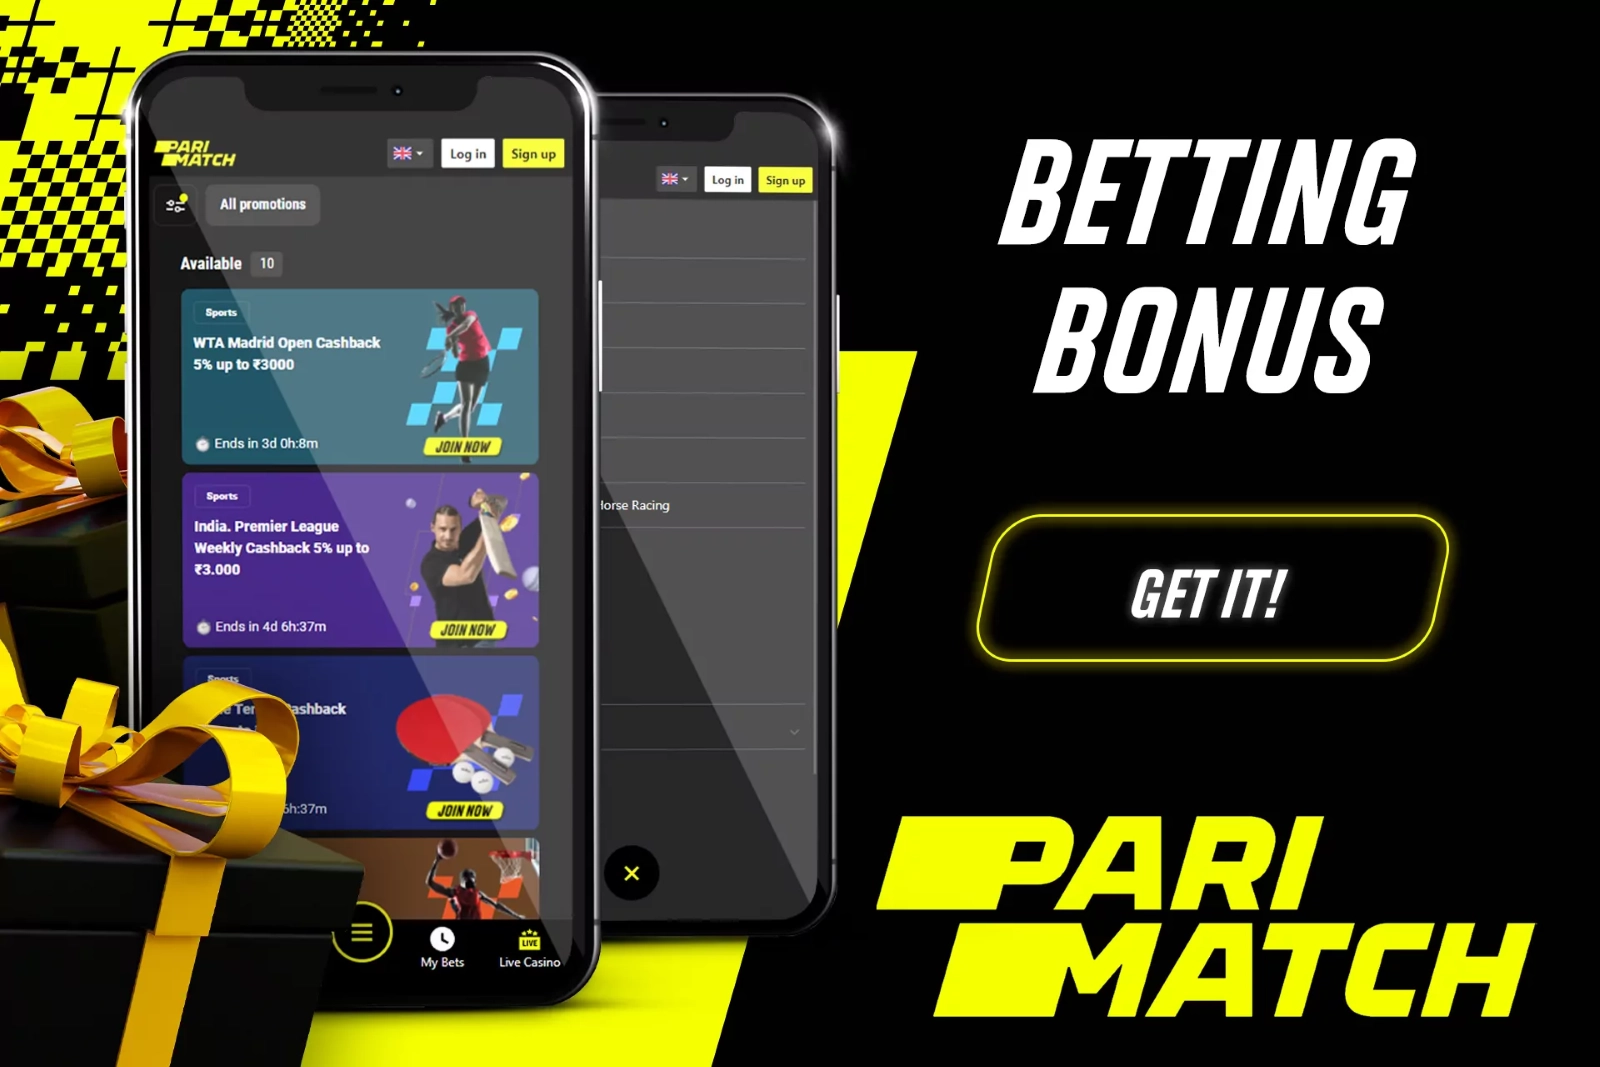 parimatch betting bonus in app